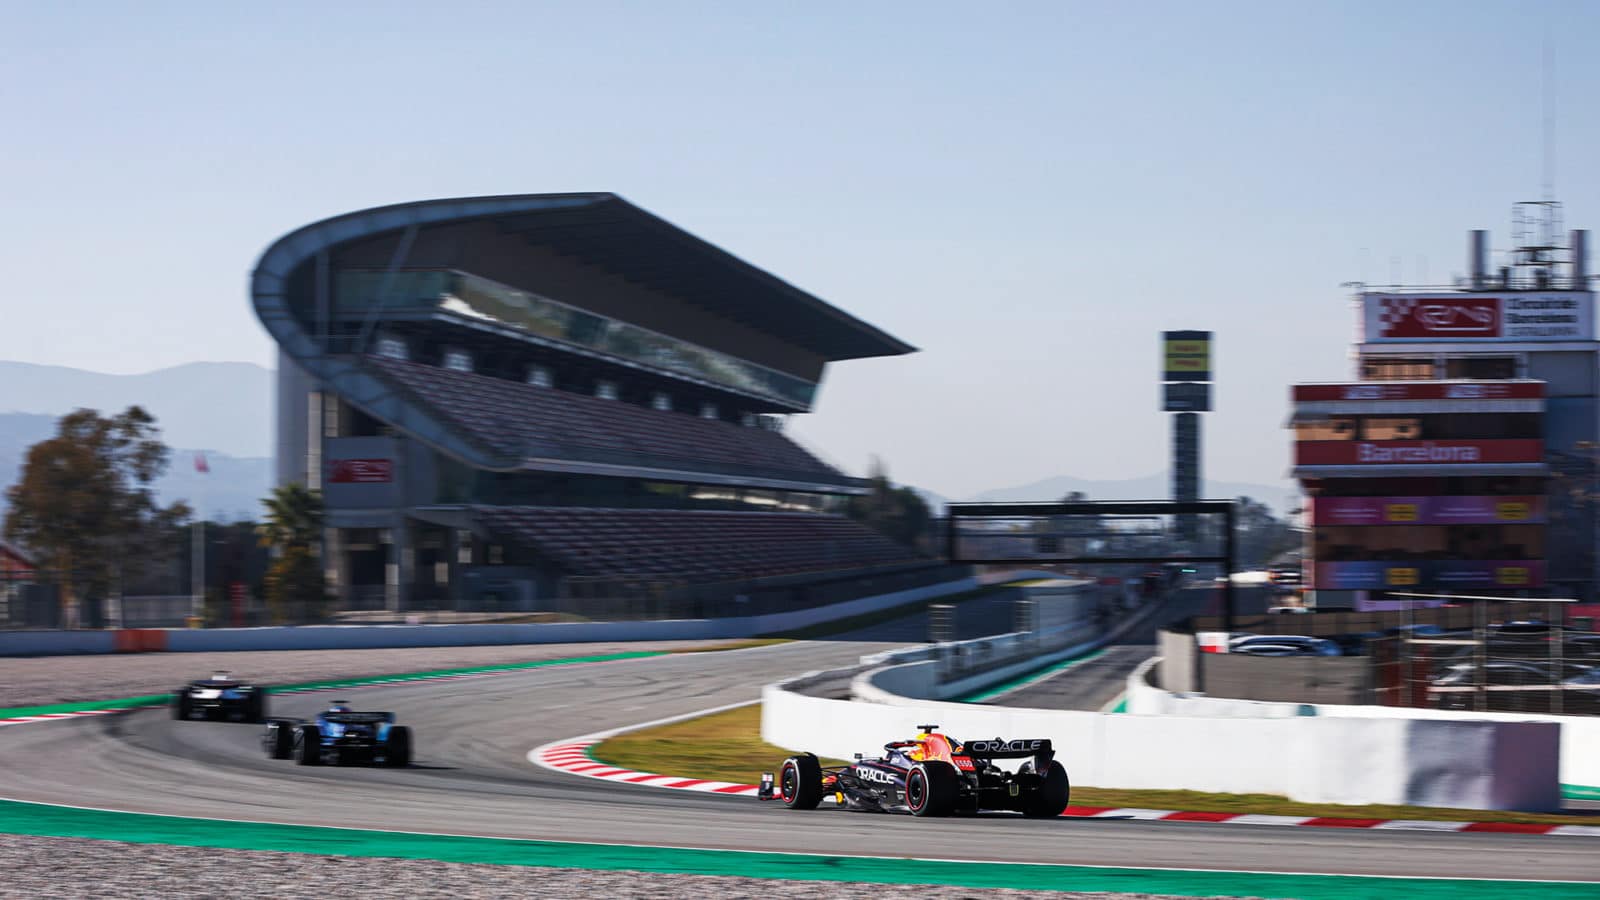 Final corner in Barcelona at 2022 F1 testing